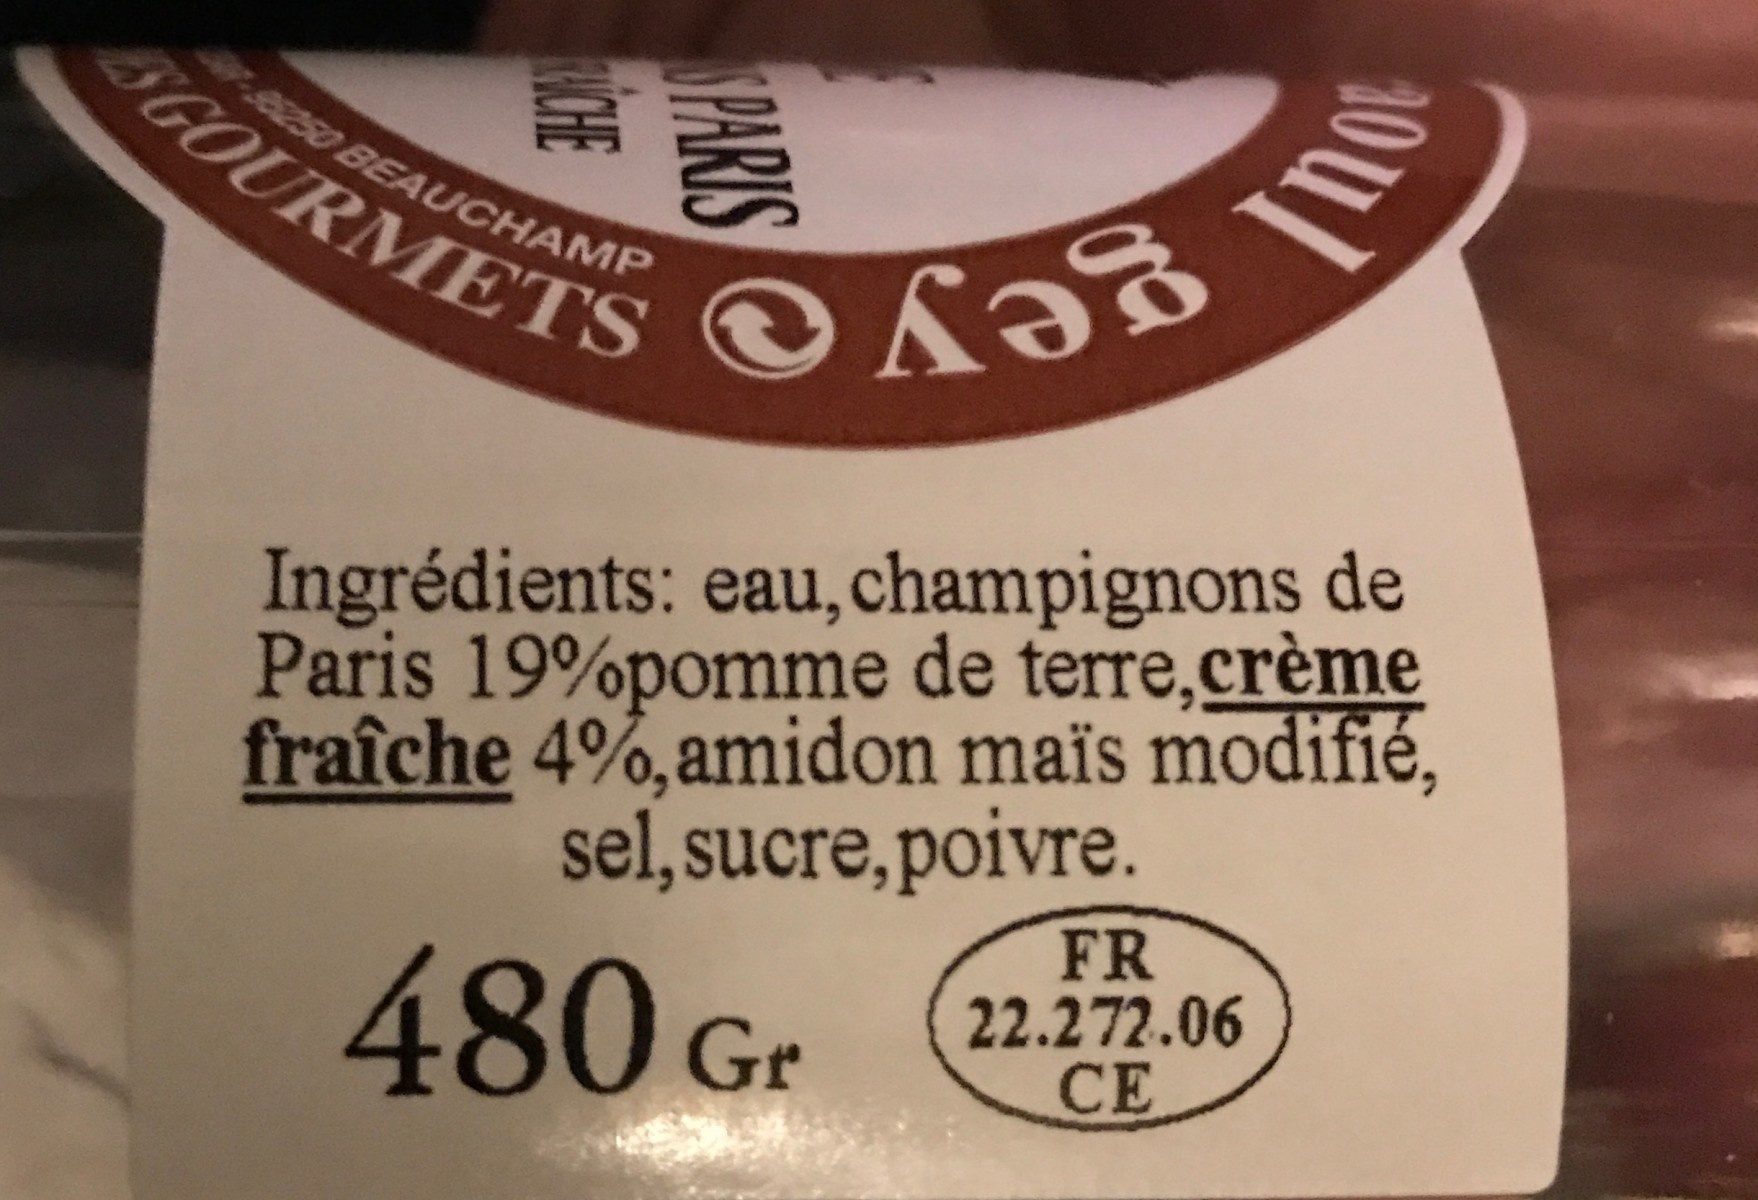 Creme champignons de paris - Ingredients - fr